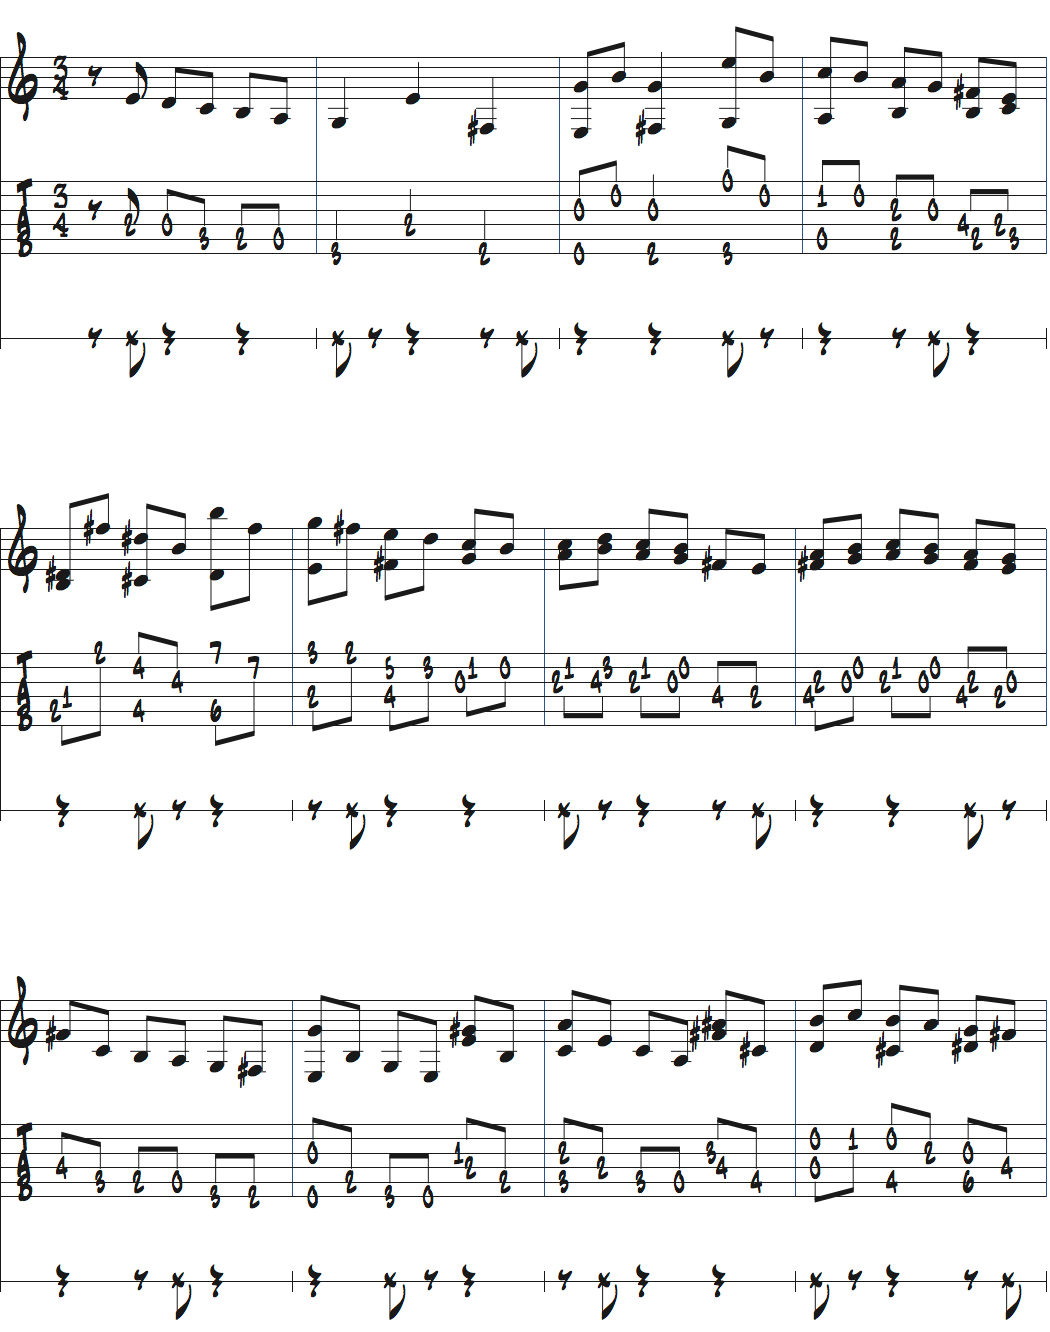 メトロノームを2拍半ごとに鳴らして練習するストレートのノリページ1楽譜